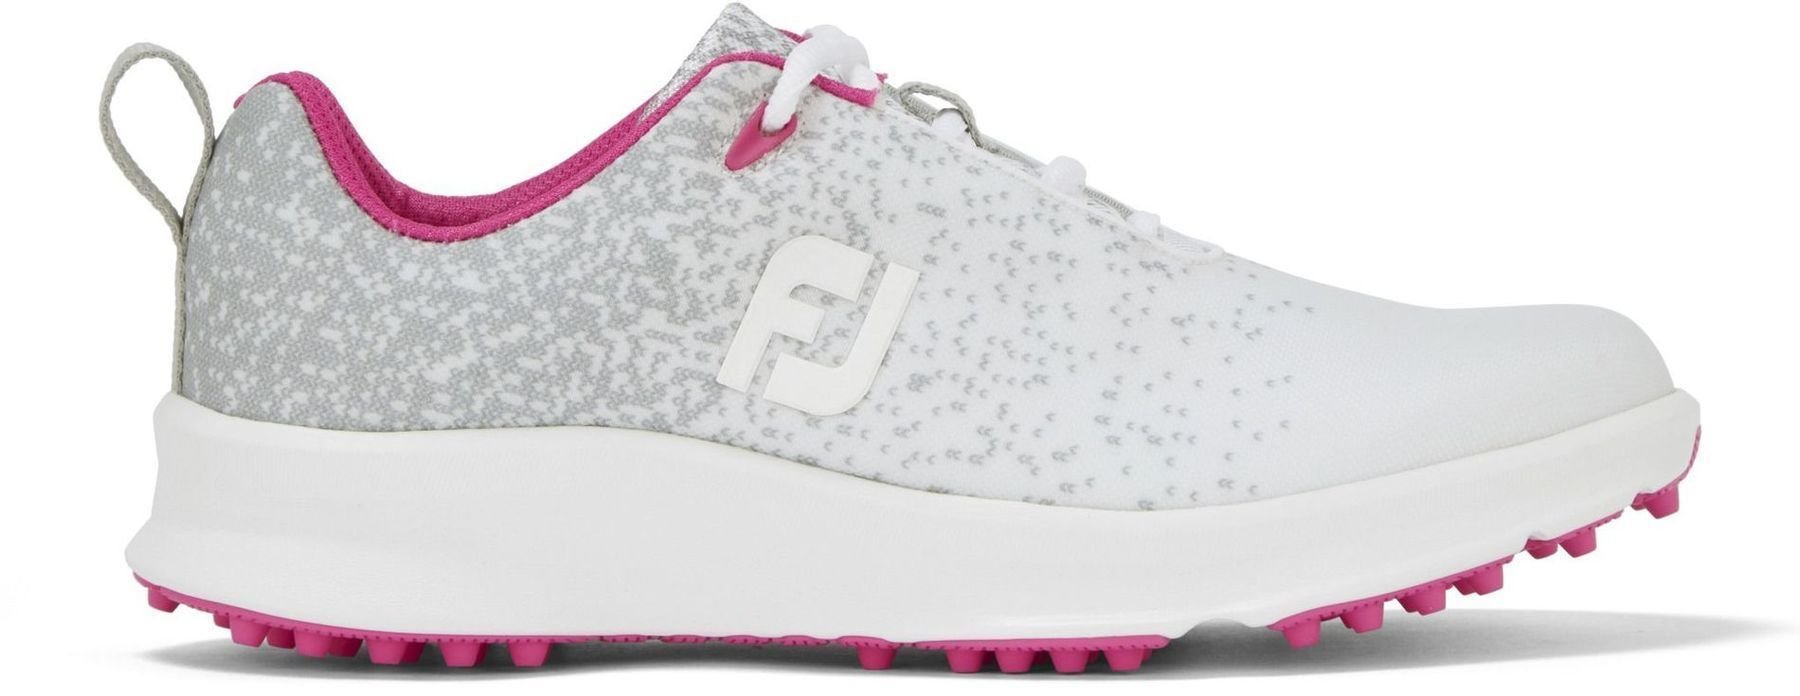 Women's golf shoes Footjoy Leisure Silver/White/Fuchsia 39